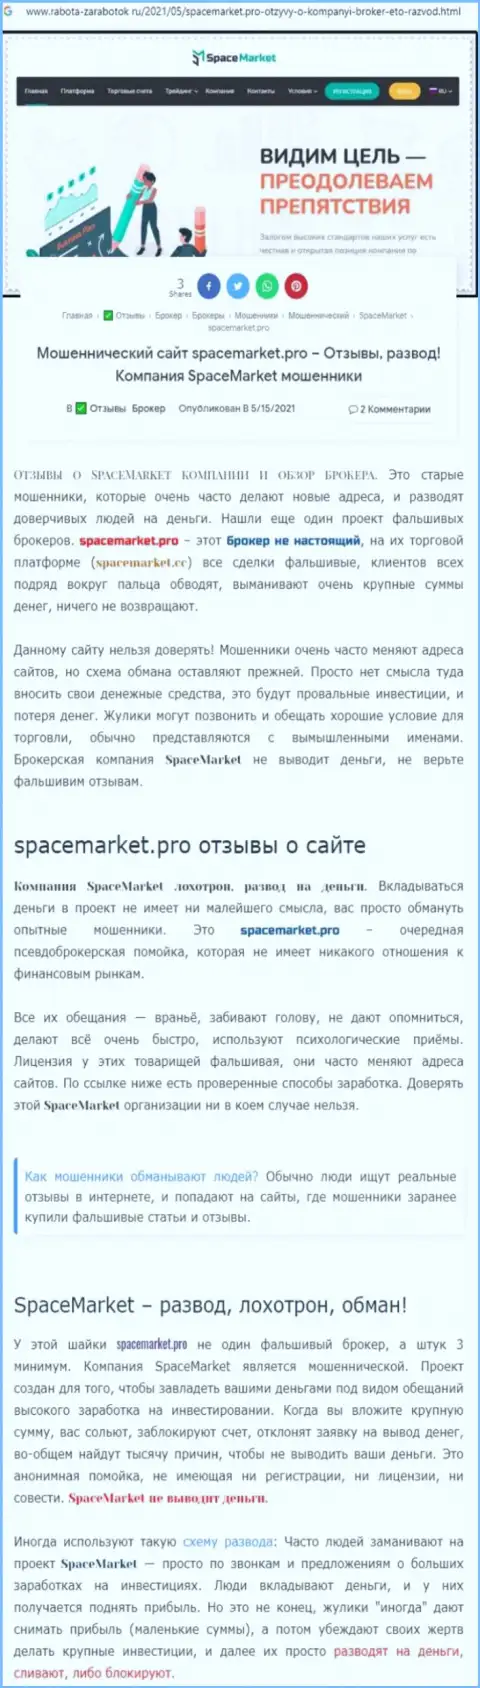 Аферисты Space Market цинично обувают - ОСТОРОЖНЕЕ (обзор мошеннических деяний)